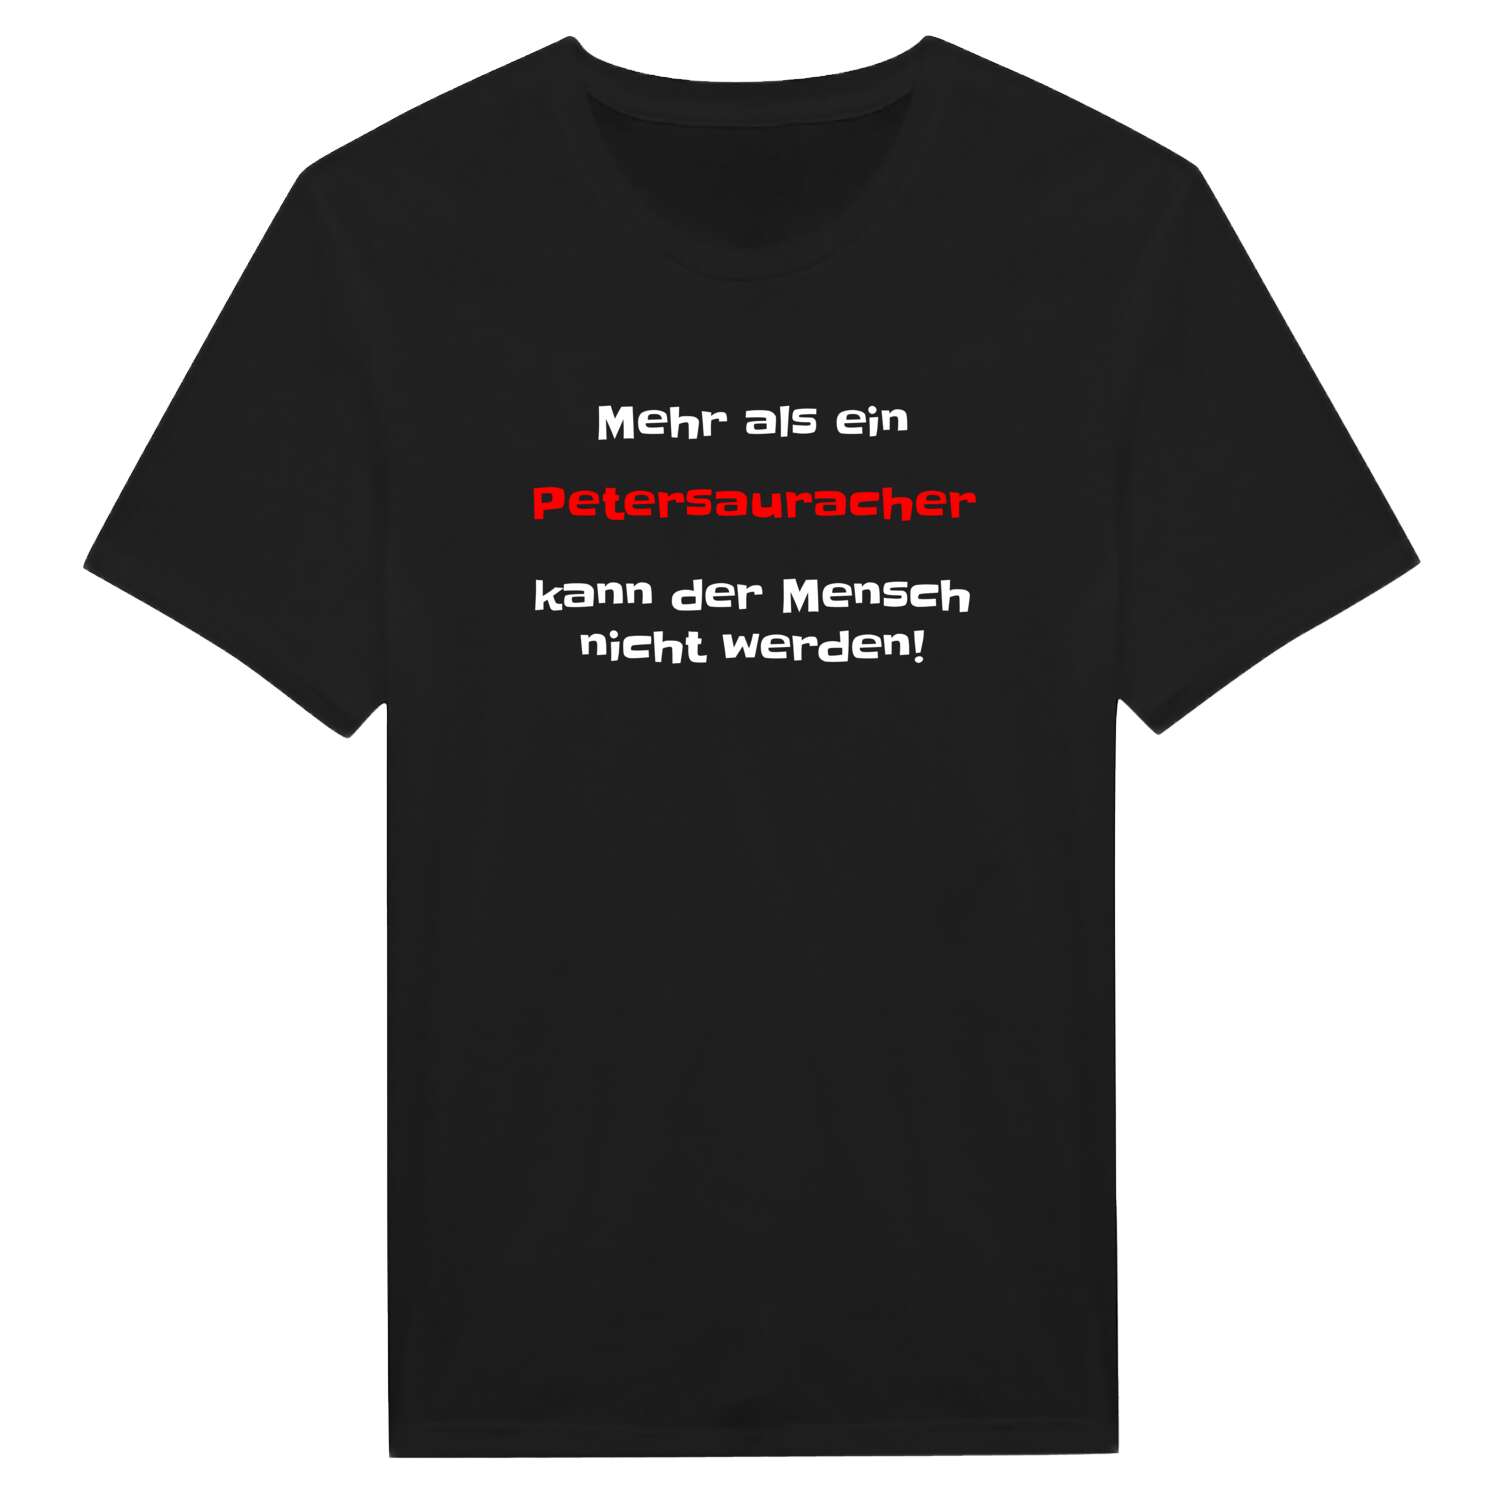 Petersaurach T-Shirt »Mehr als ein«